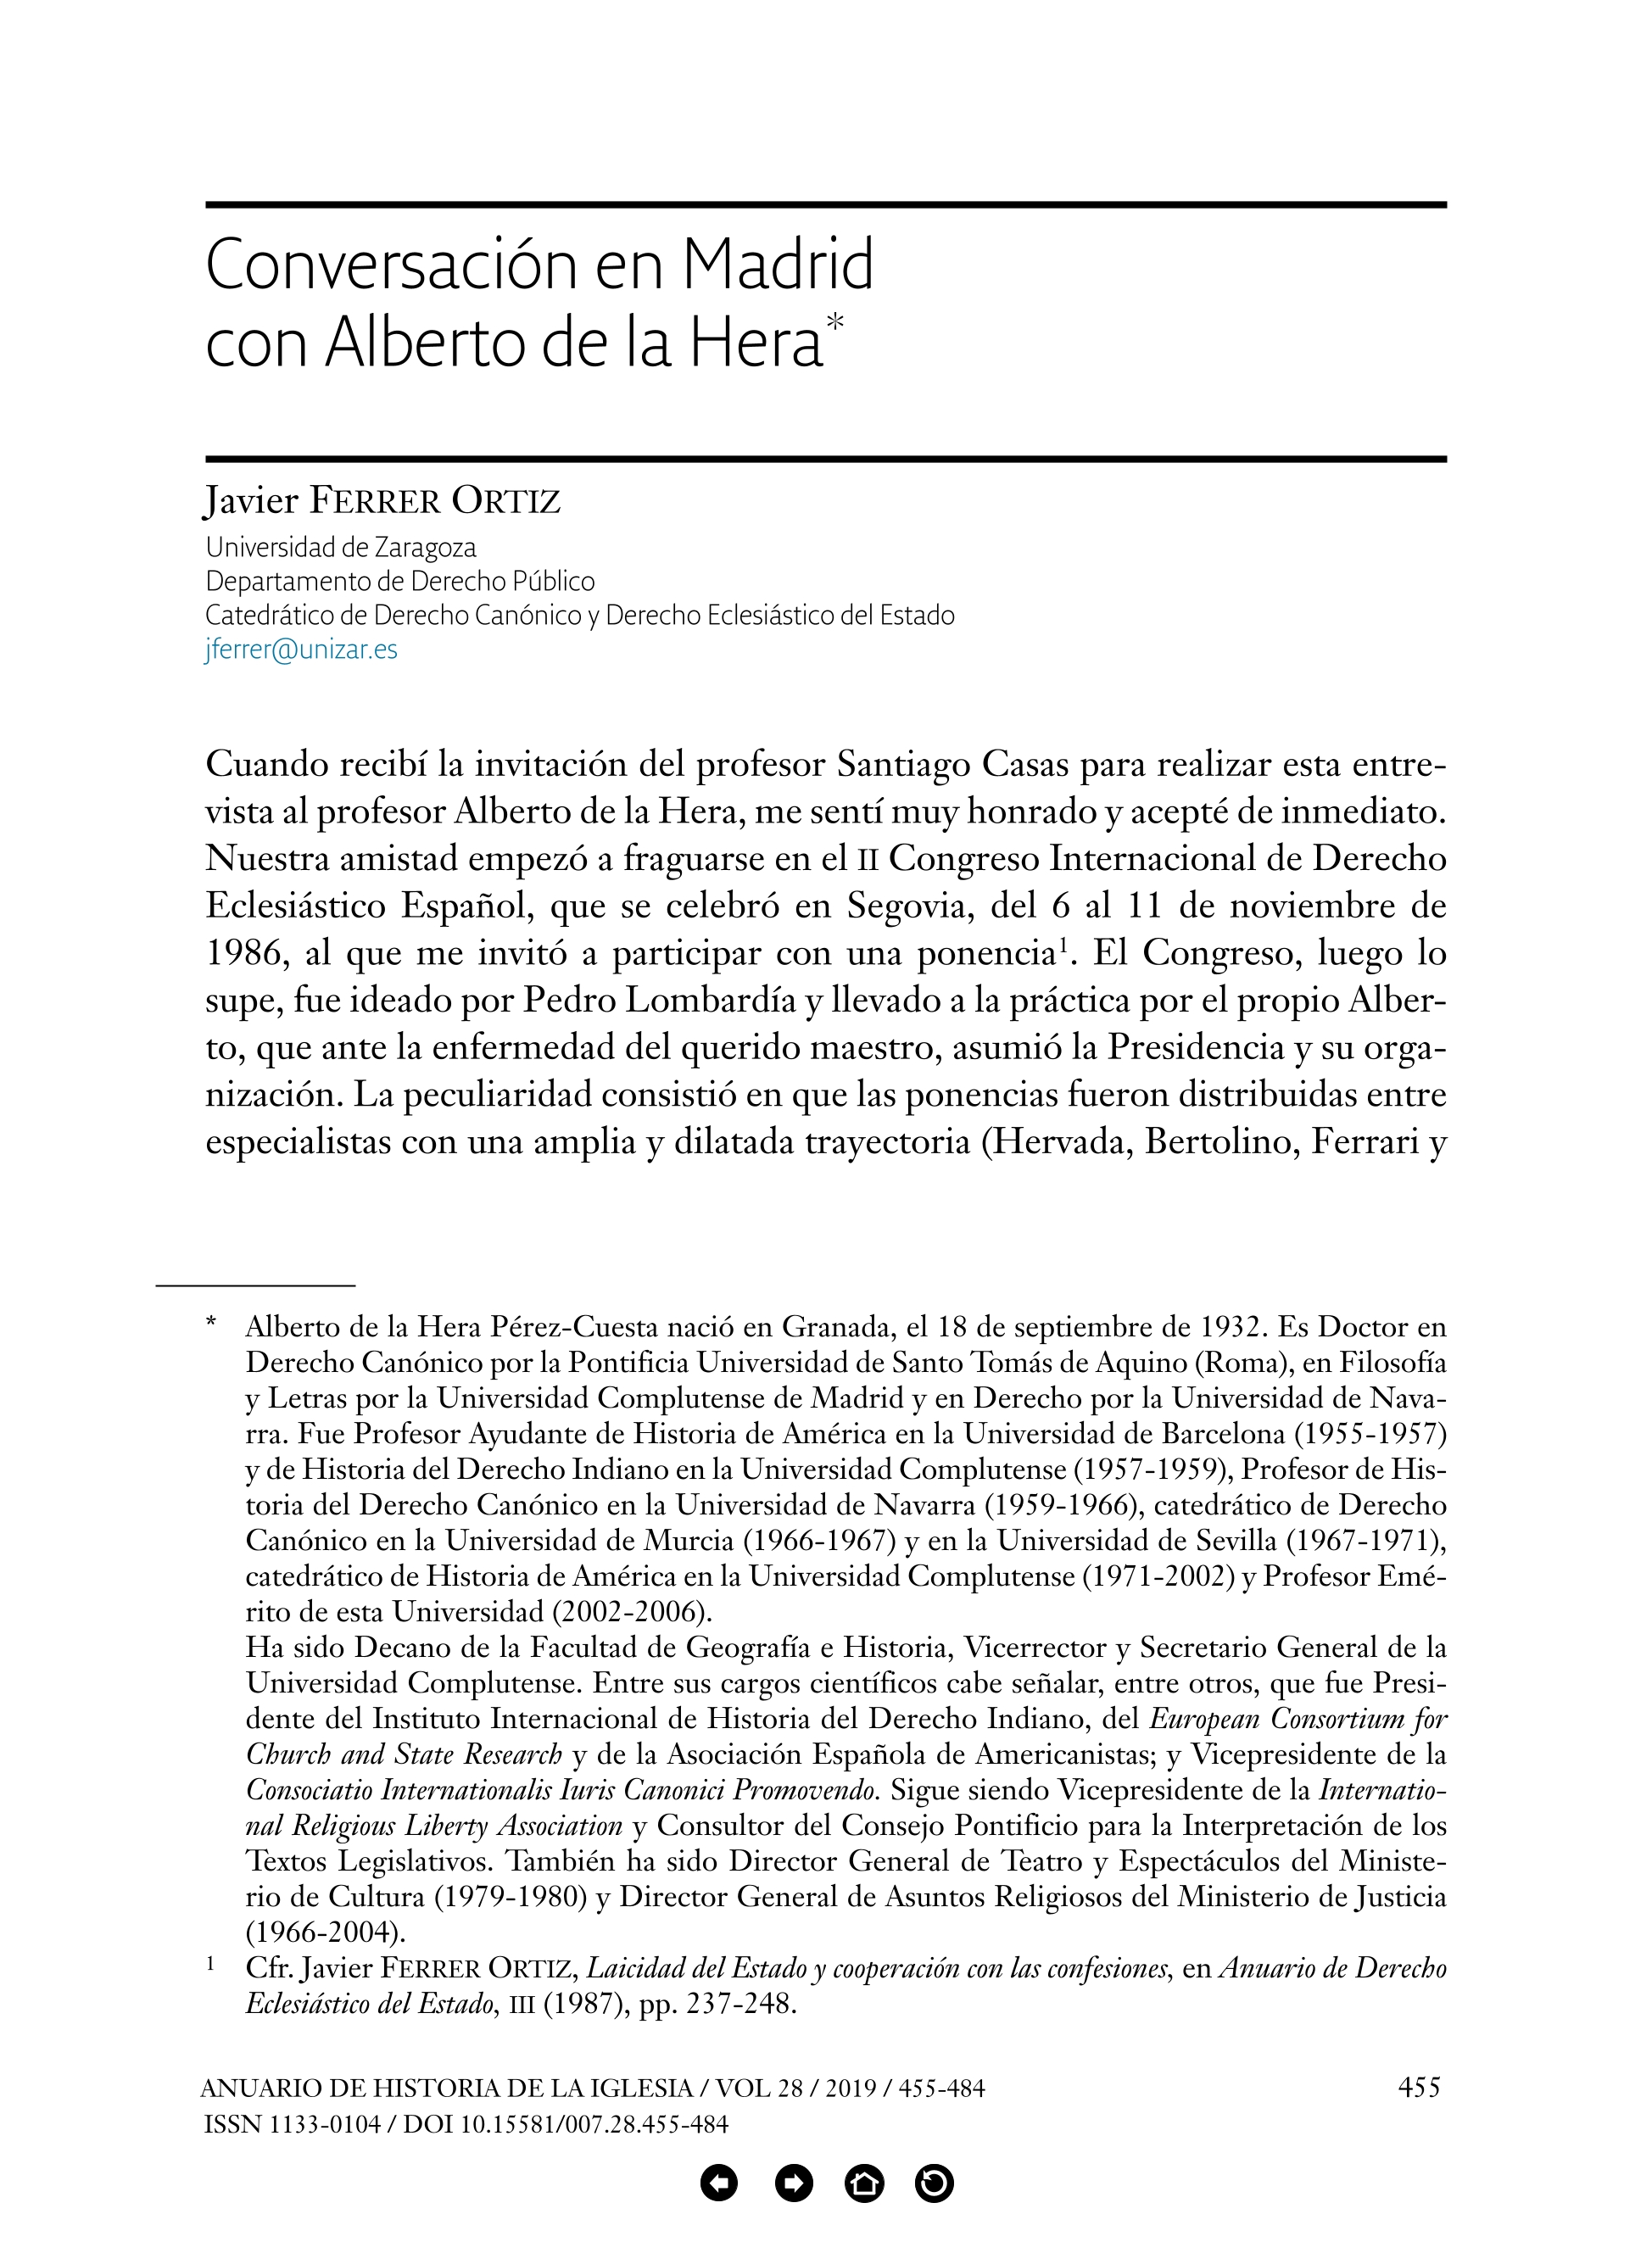 Conversación en Madrid con Alberto de la Hera